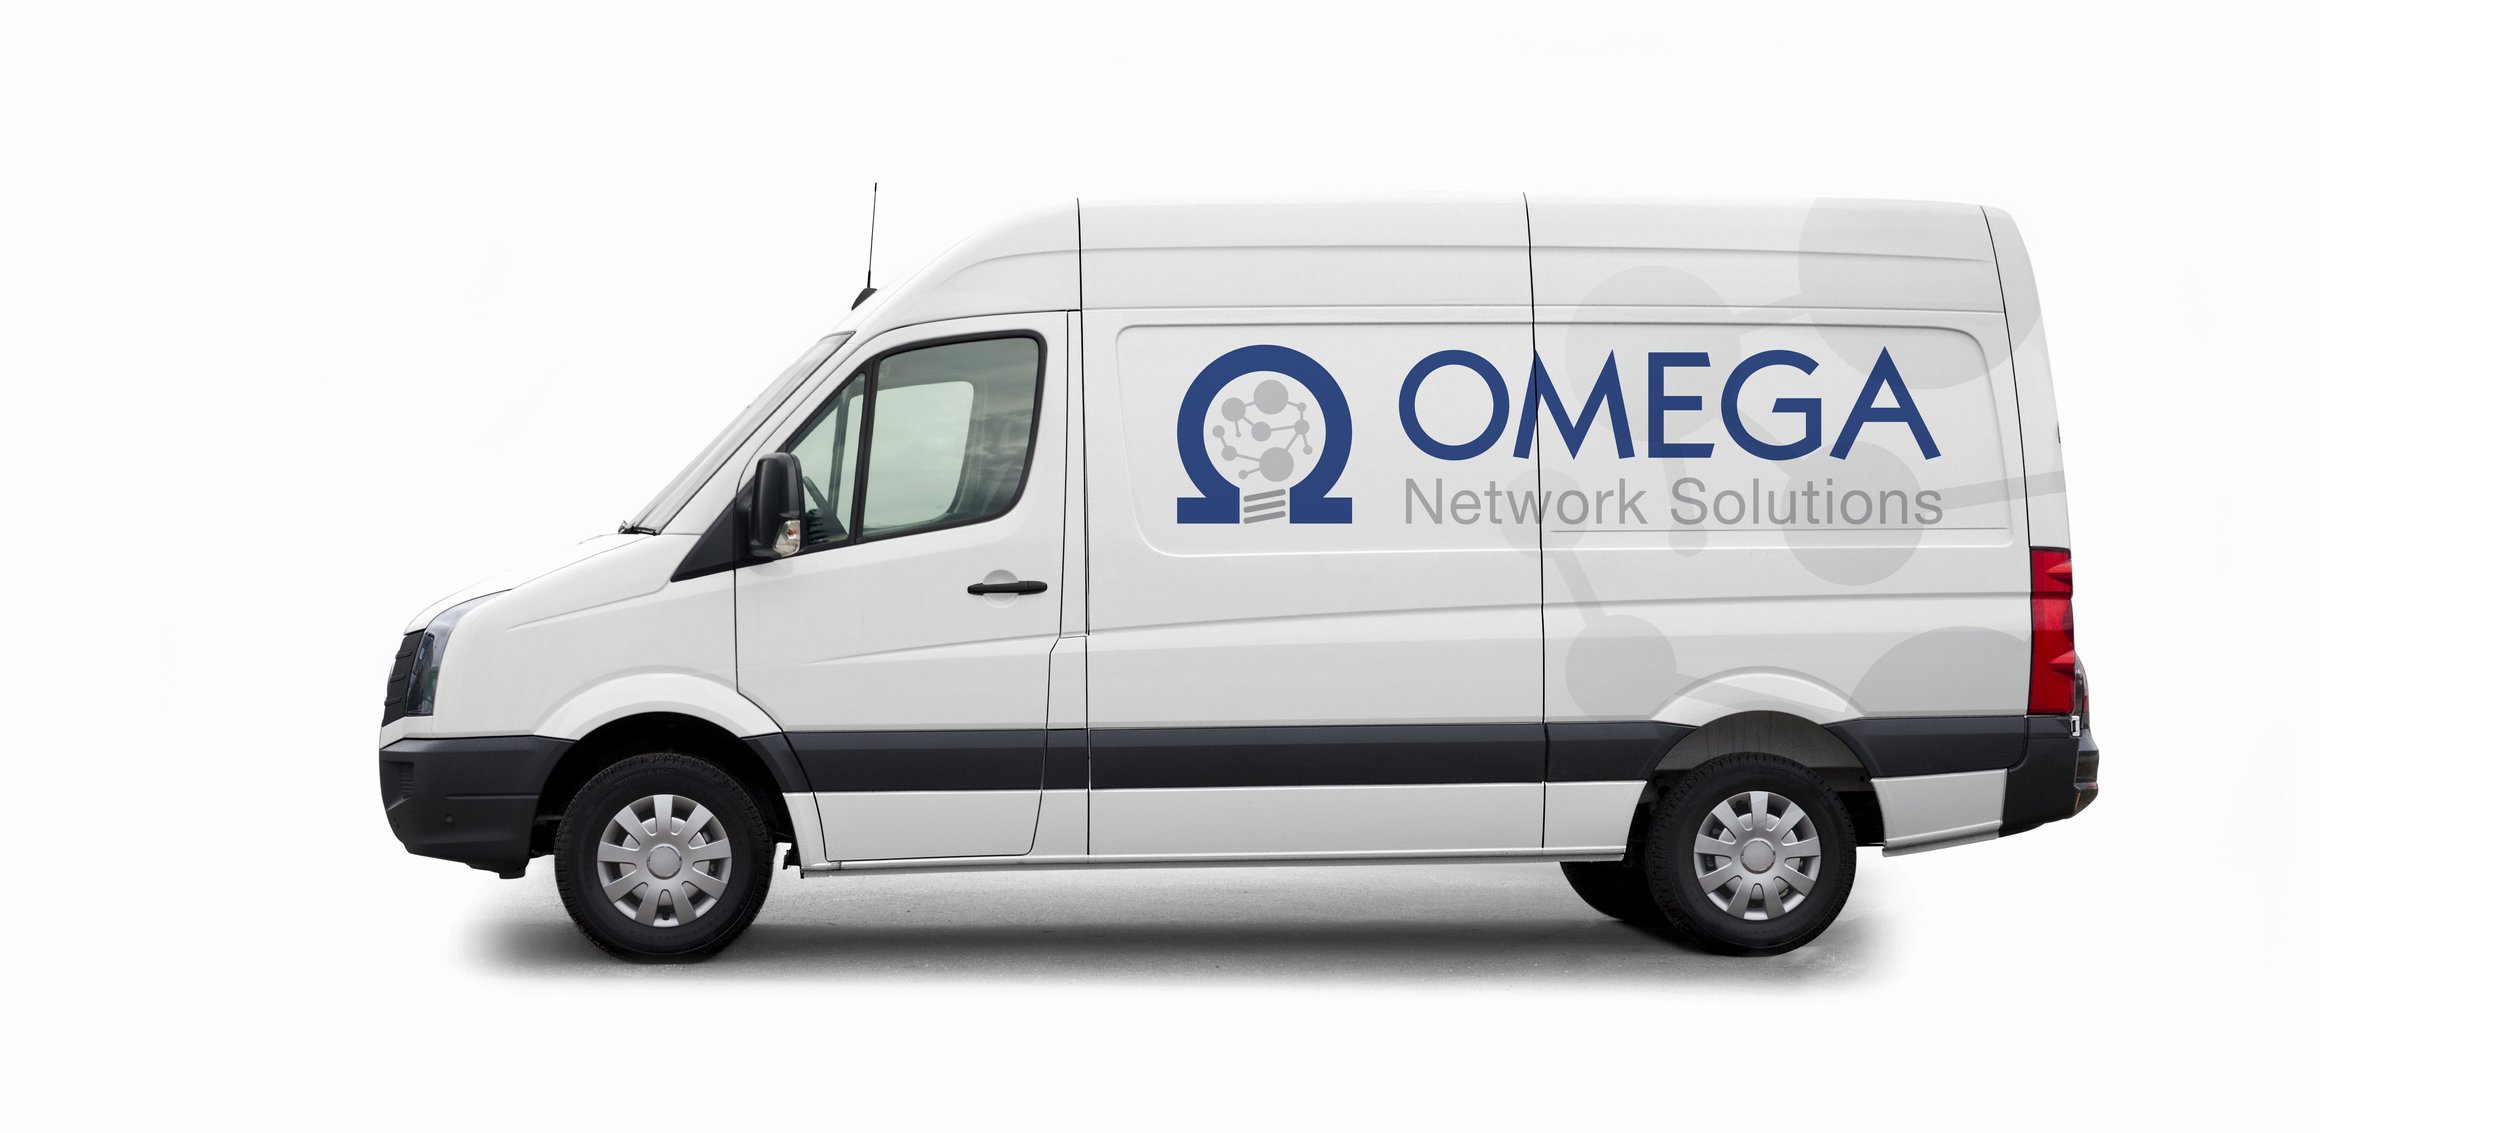 omega-network-solutions-truck.jpg